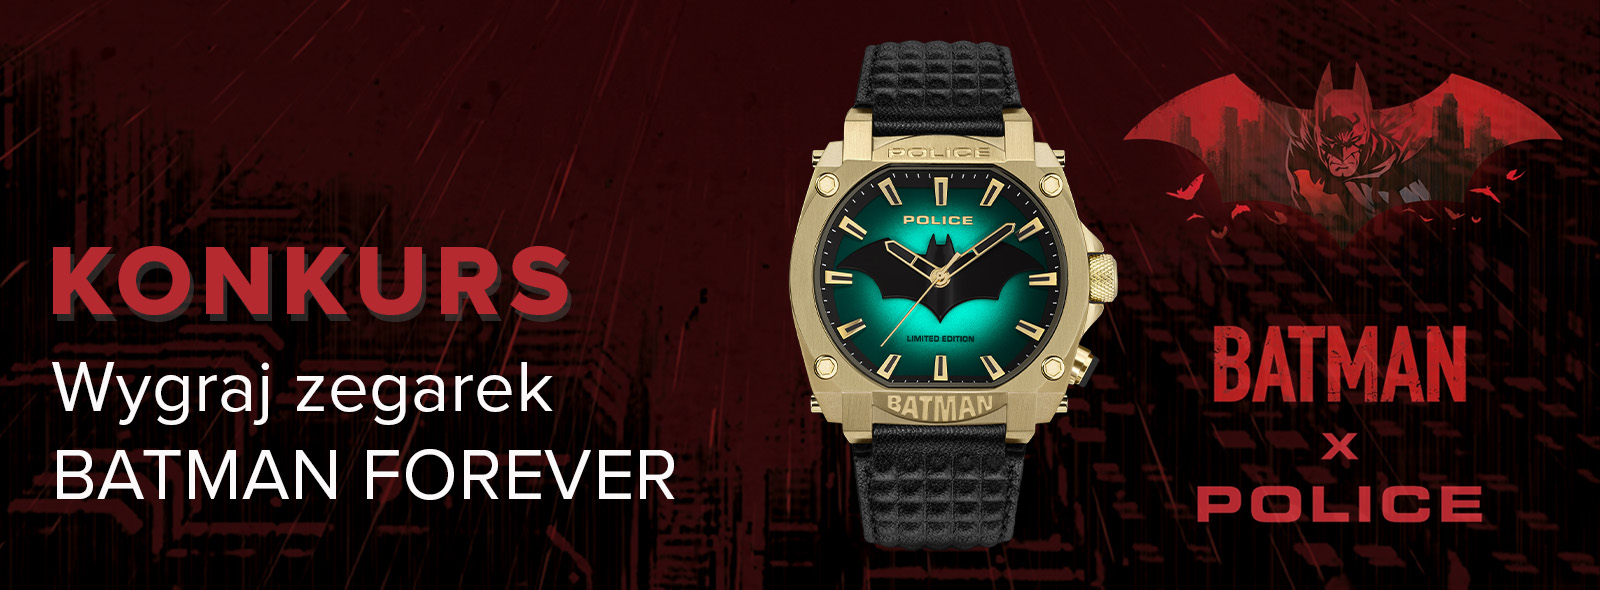 Konkurs dla miłośników Batmana – wygraj zegarek inspirowany superbohaterem!